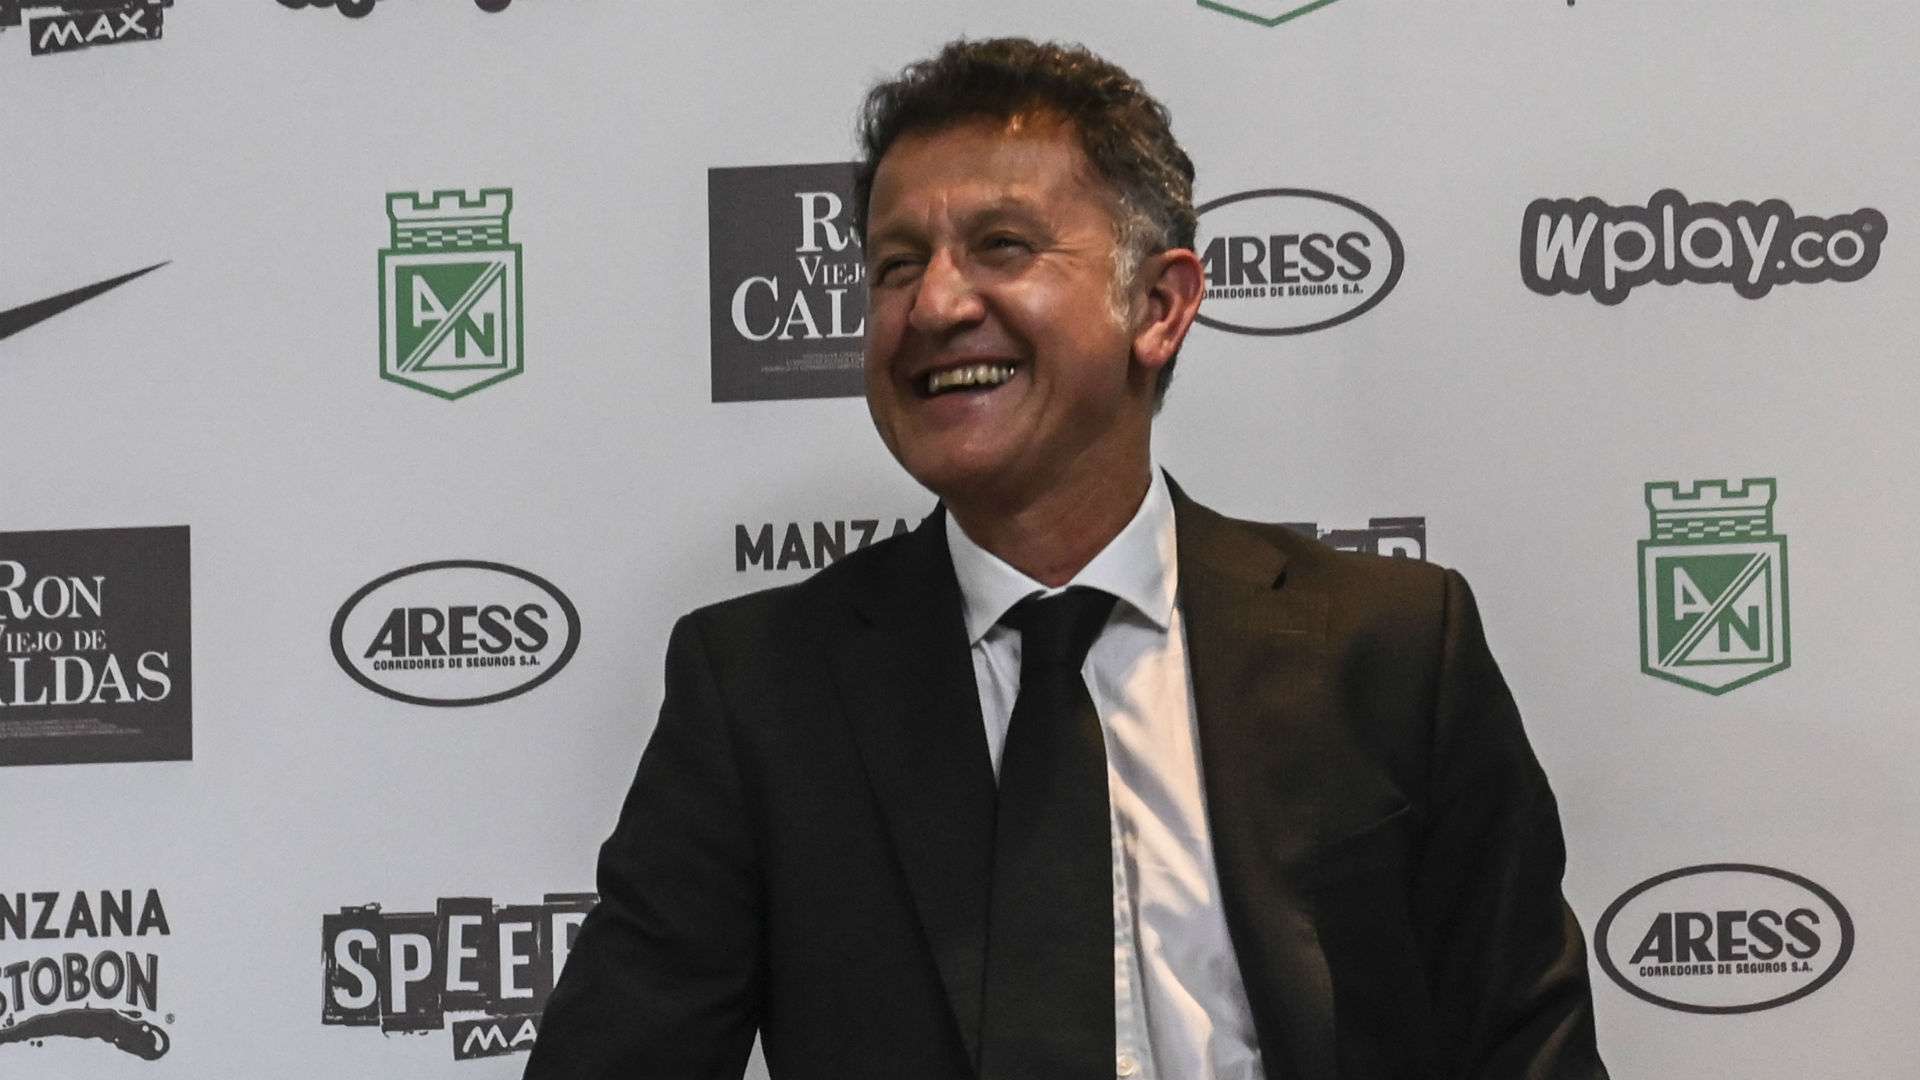 Juan Carlos Osorio Atlético Nacional 2019